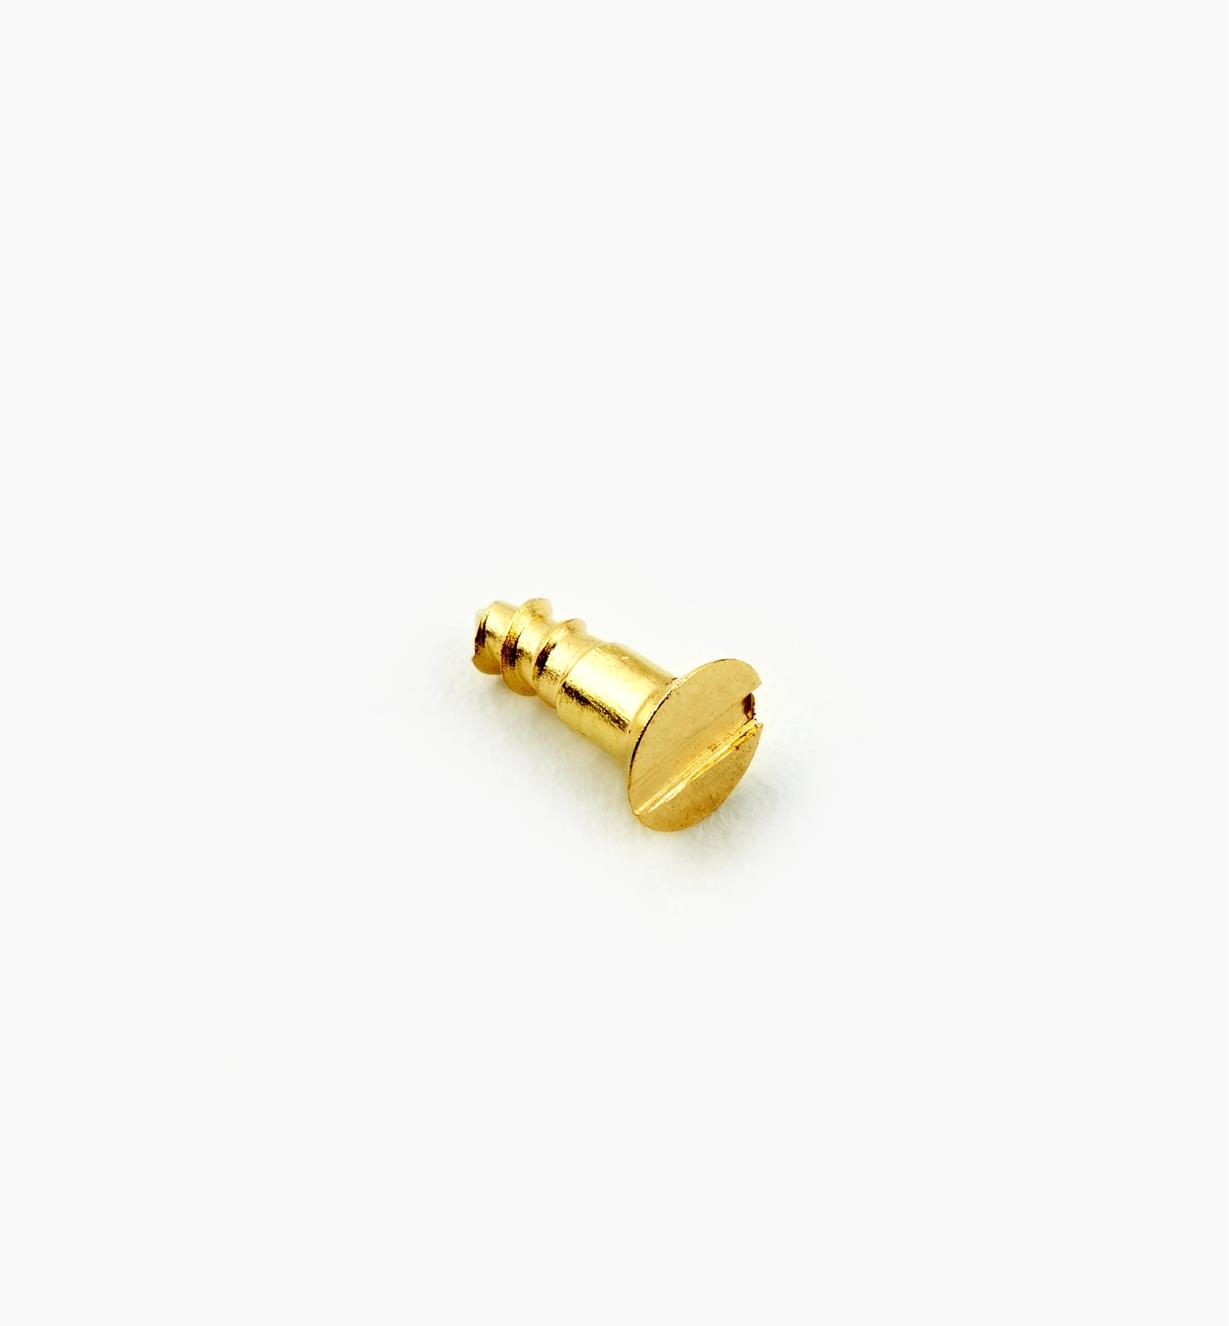 91Z0101X - #1, 1/4" Flat Brass Screws, pkg. of 10